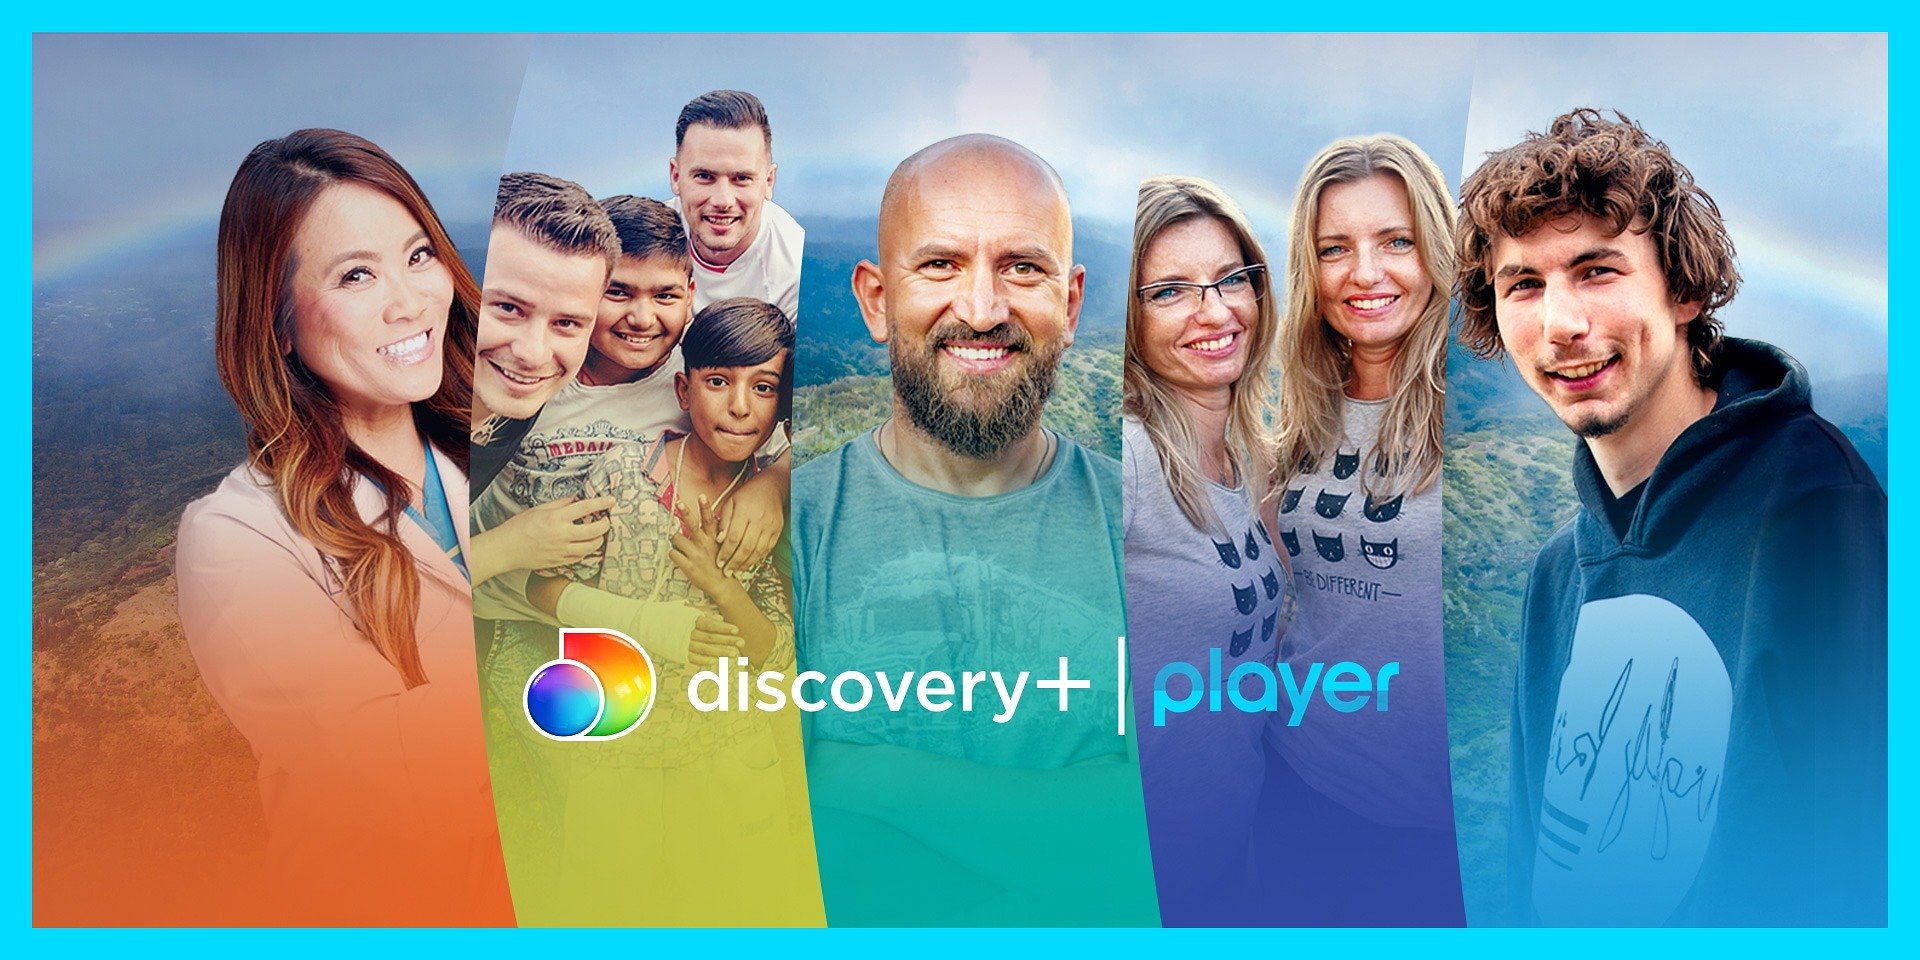 Produkcje Discovery+ wkraczają dziś na platformę Player! Jakie hity można już oglądać?